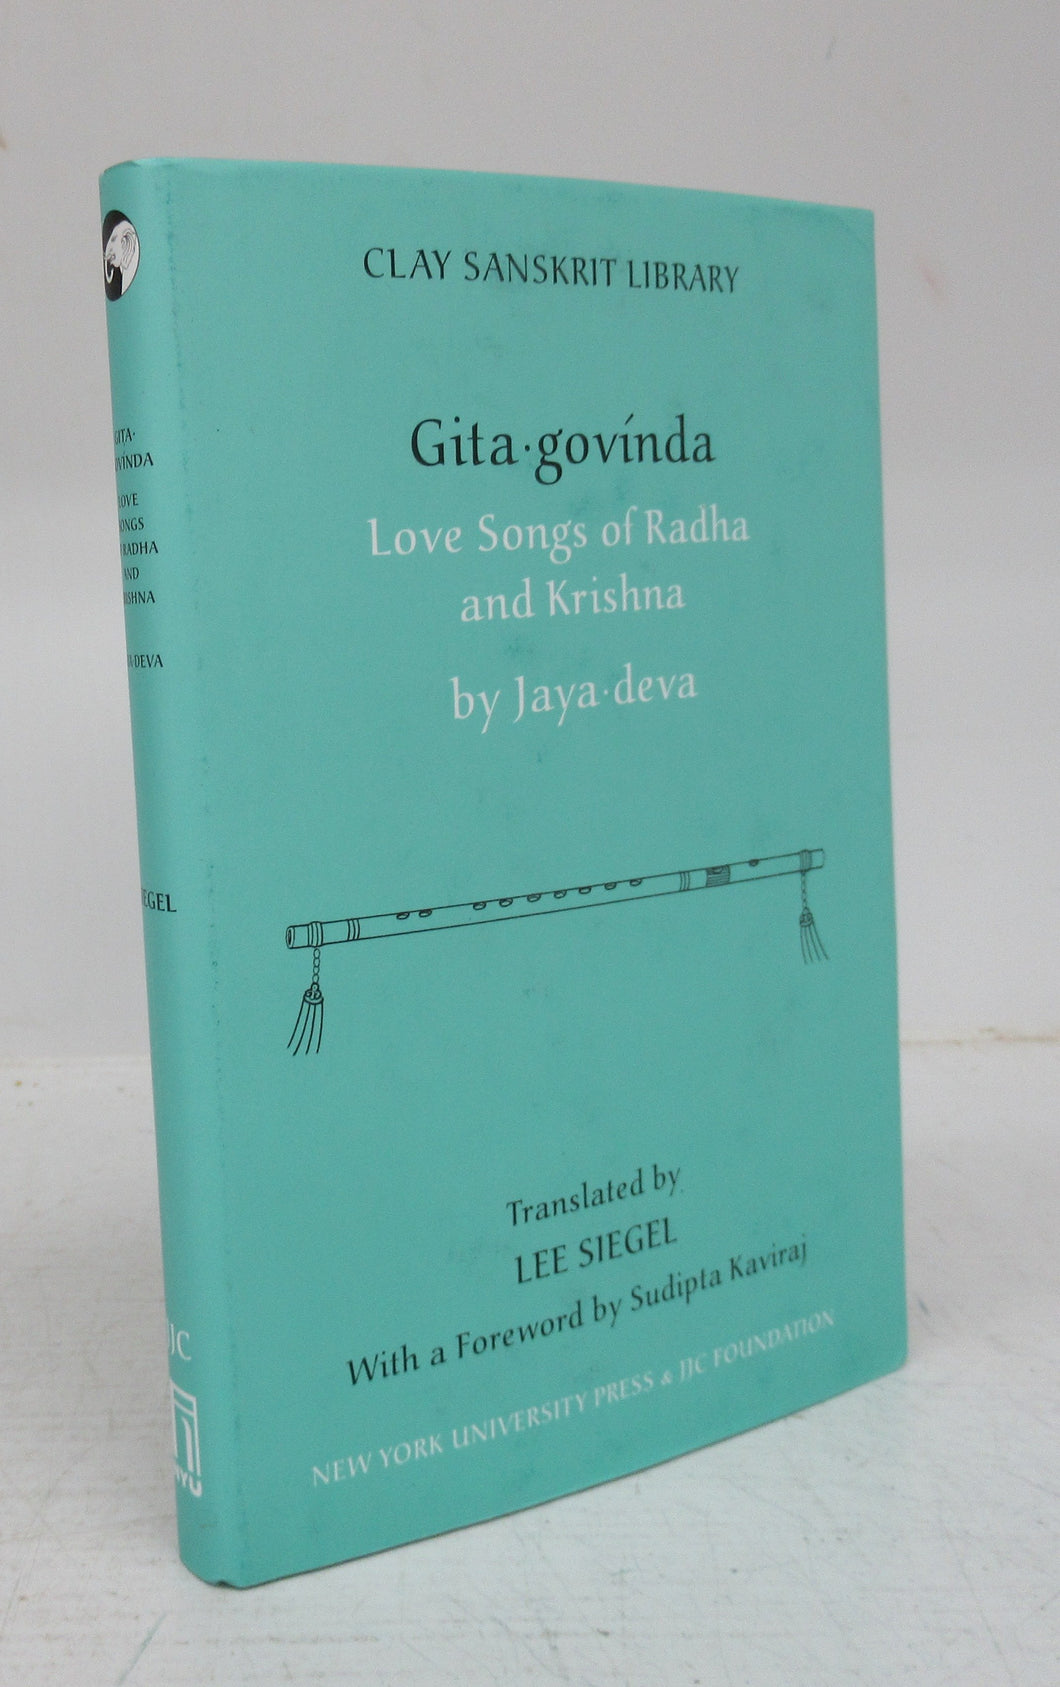 Love Songs of Radha and Krishna